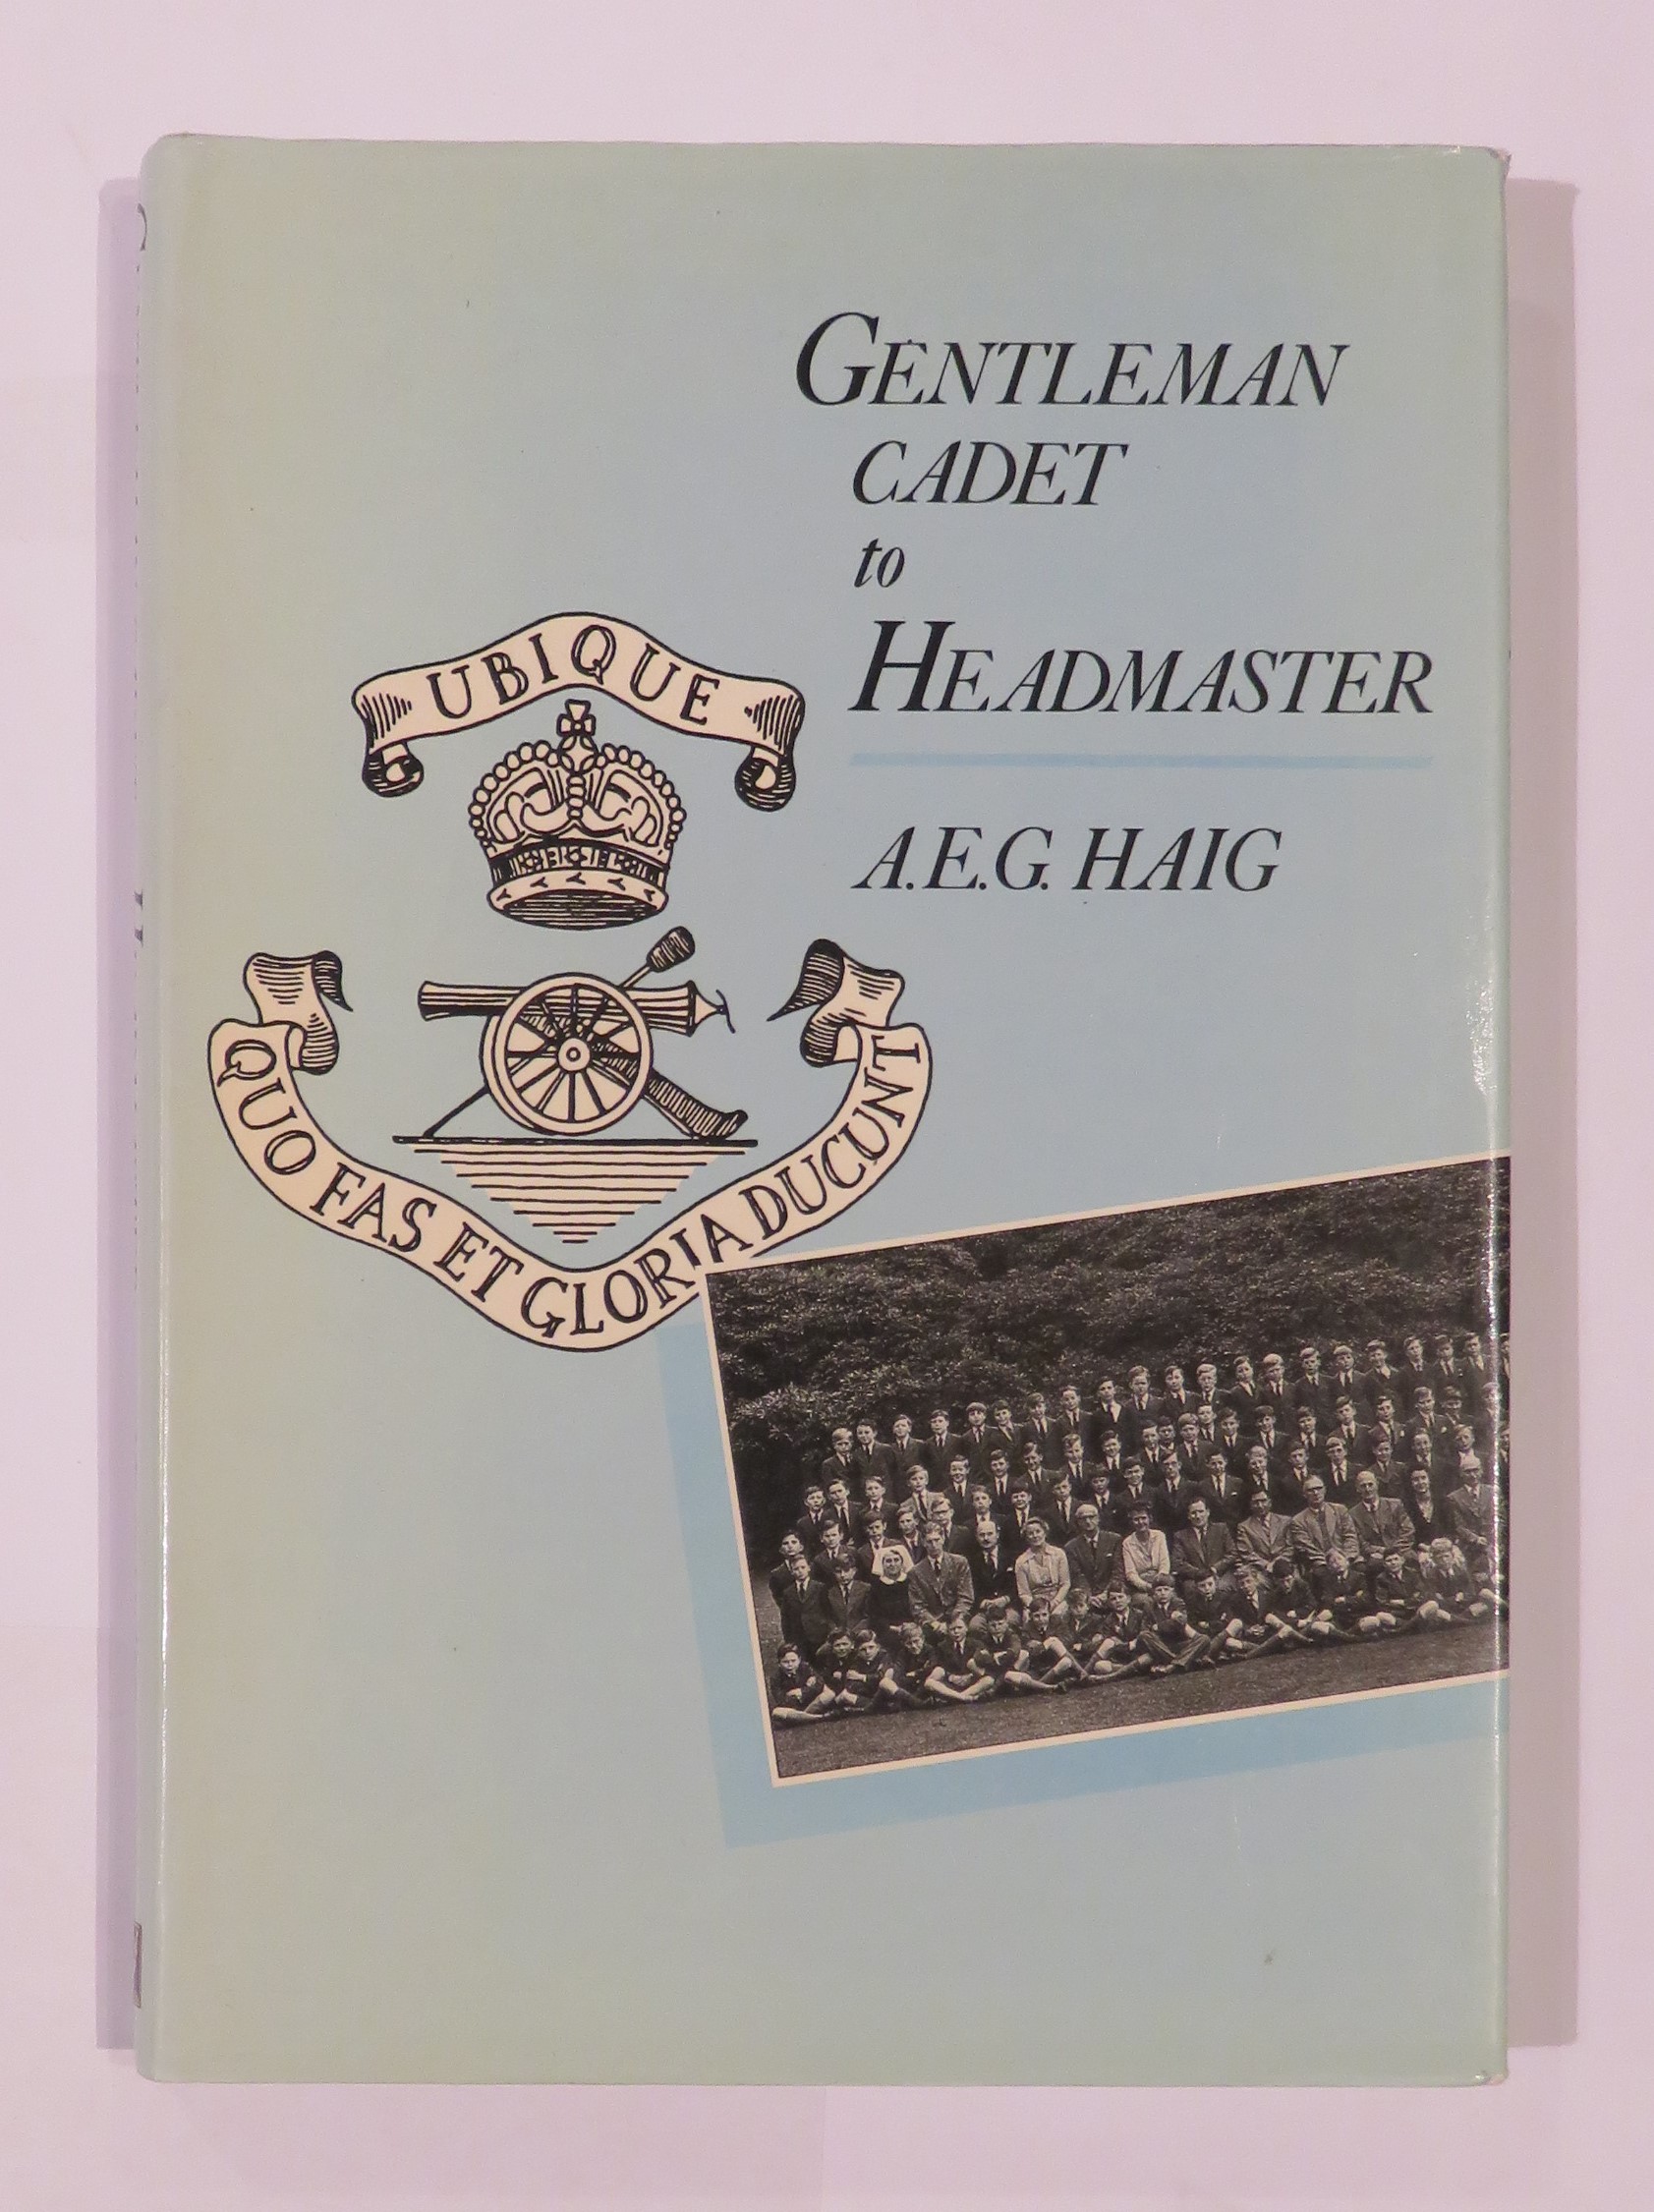 Gentleman Cadet to Headmaster